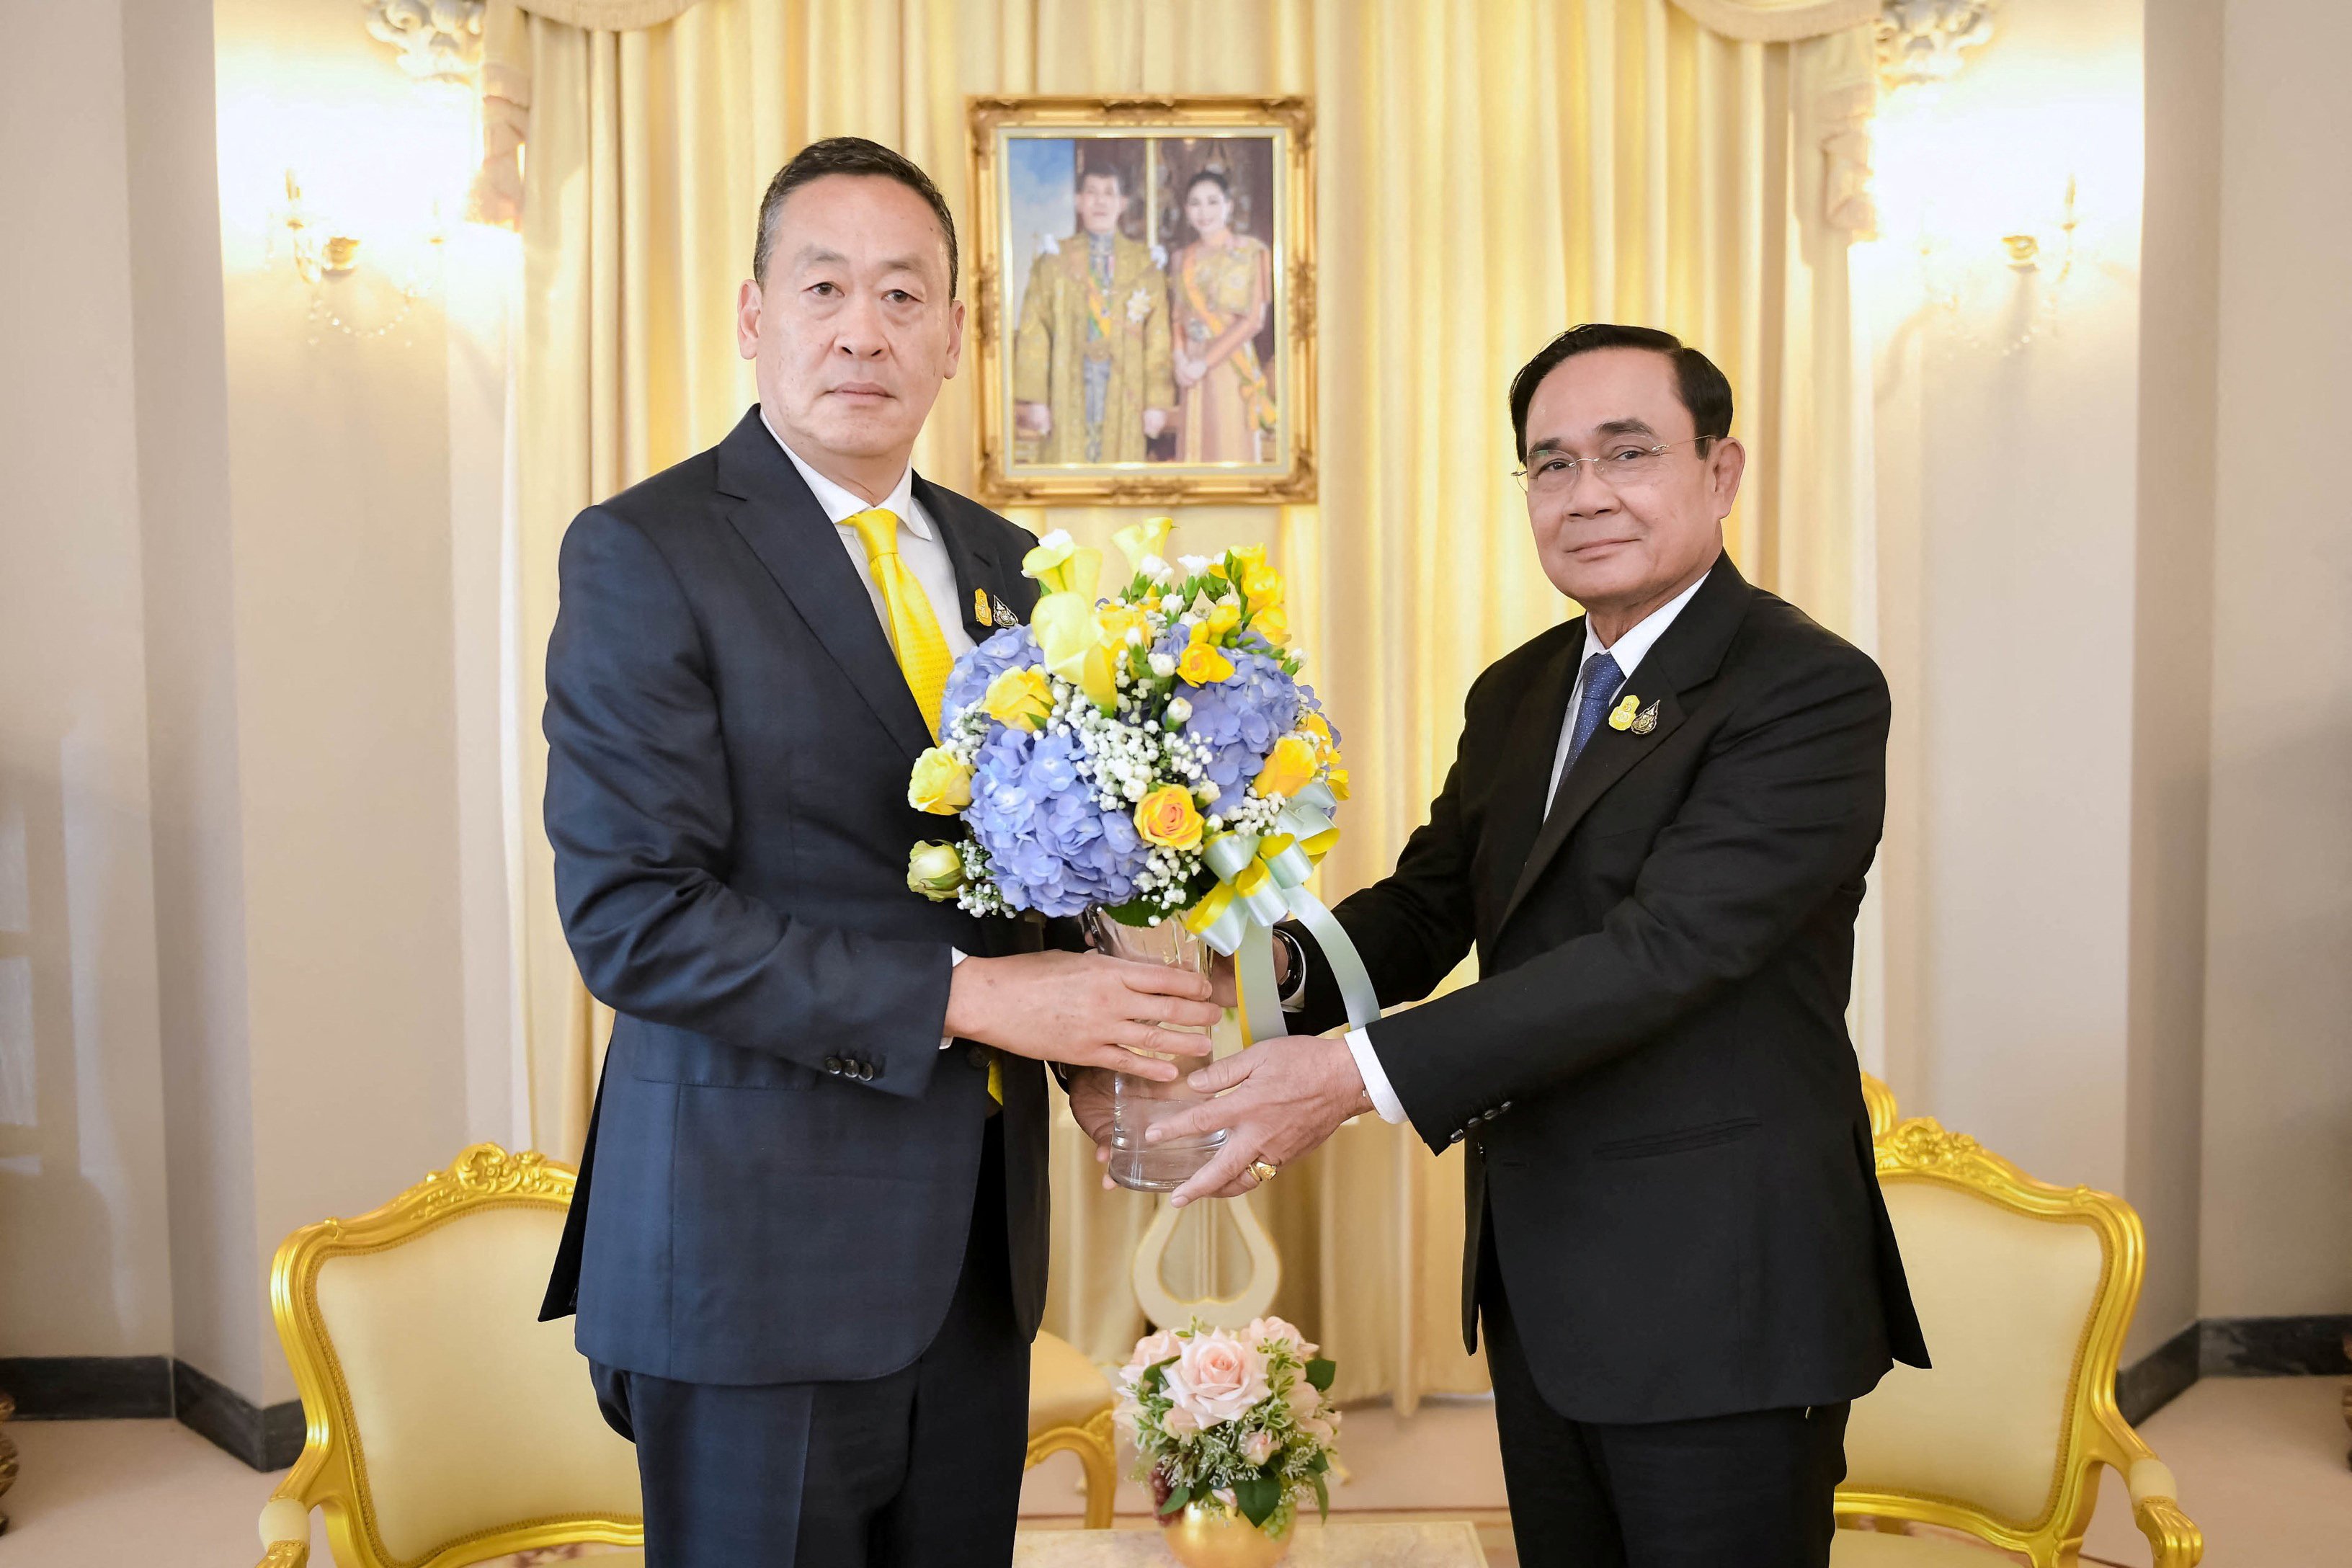 Thailand’s new Prime Minister Srettha Thavisin (left) with caretaker former Prime Minister Prayuth Chan-ocha in Bangkok on Thursday. Photo: via Reuters